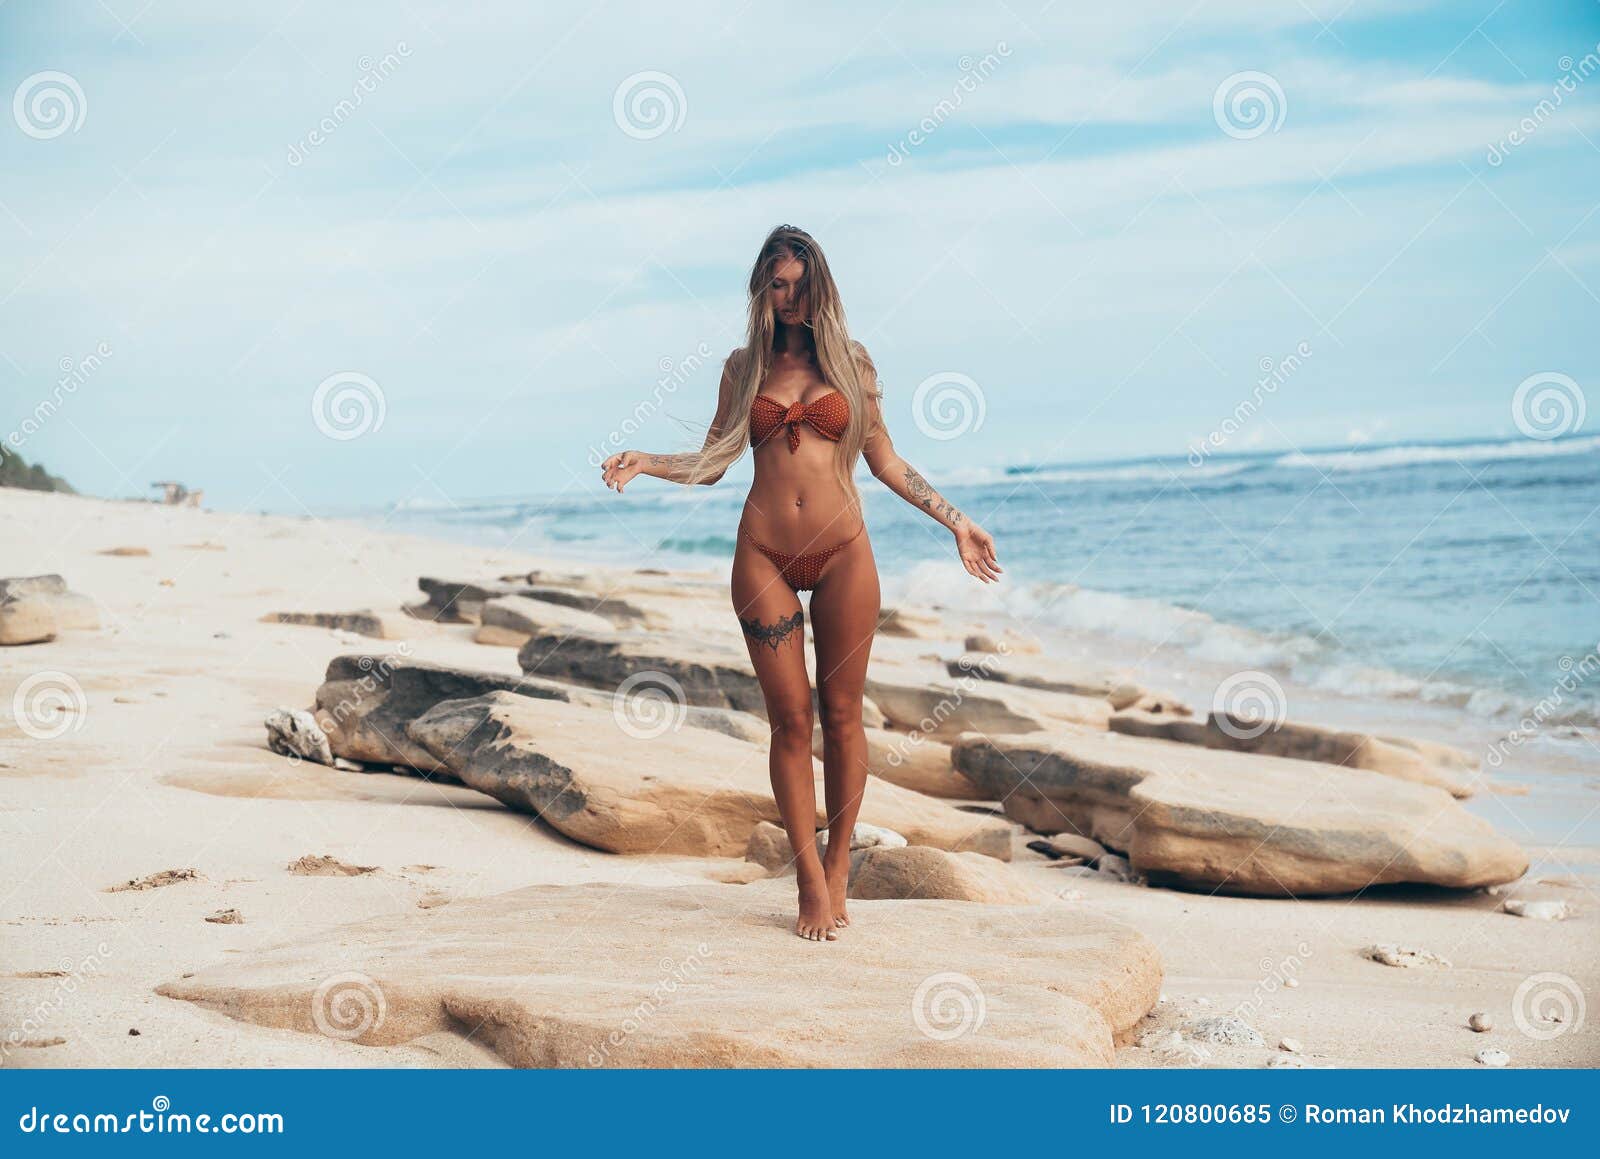 gorgeous girl nude beach